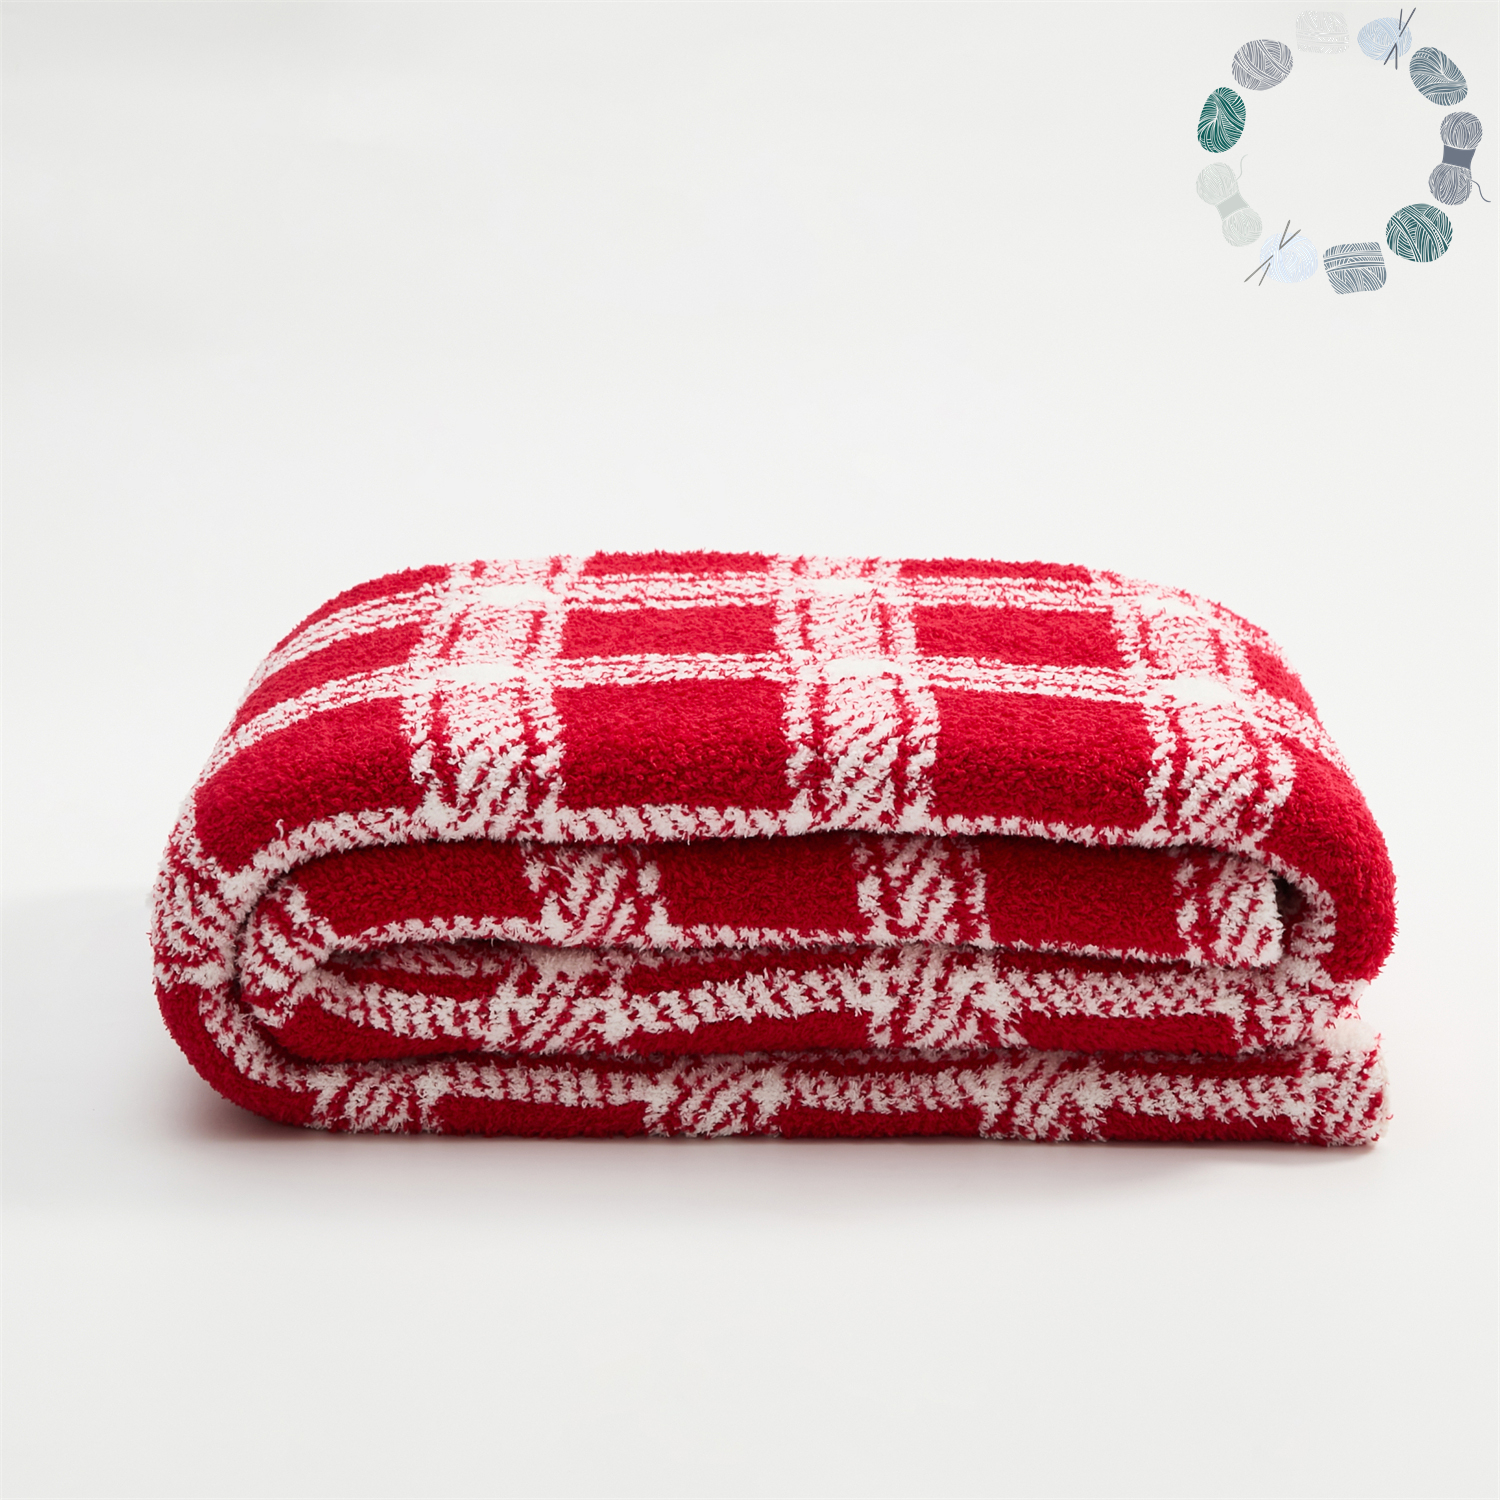 新款半边绒慕山格毯子休闲毯旅行毯午睡毯沙发毯床尾巾系列 130*160cm 红色